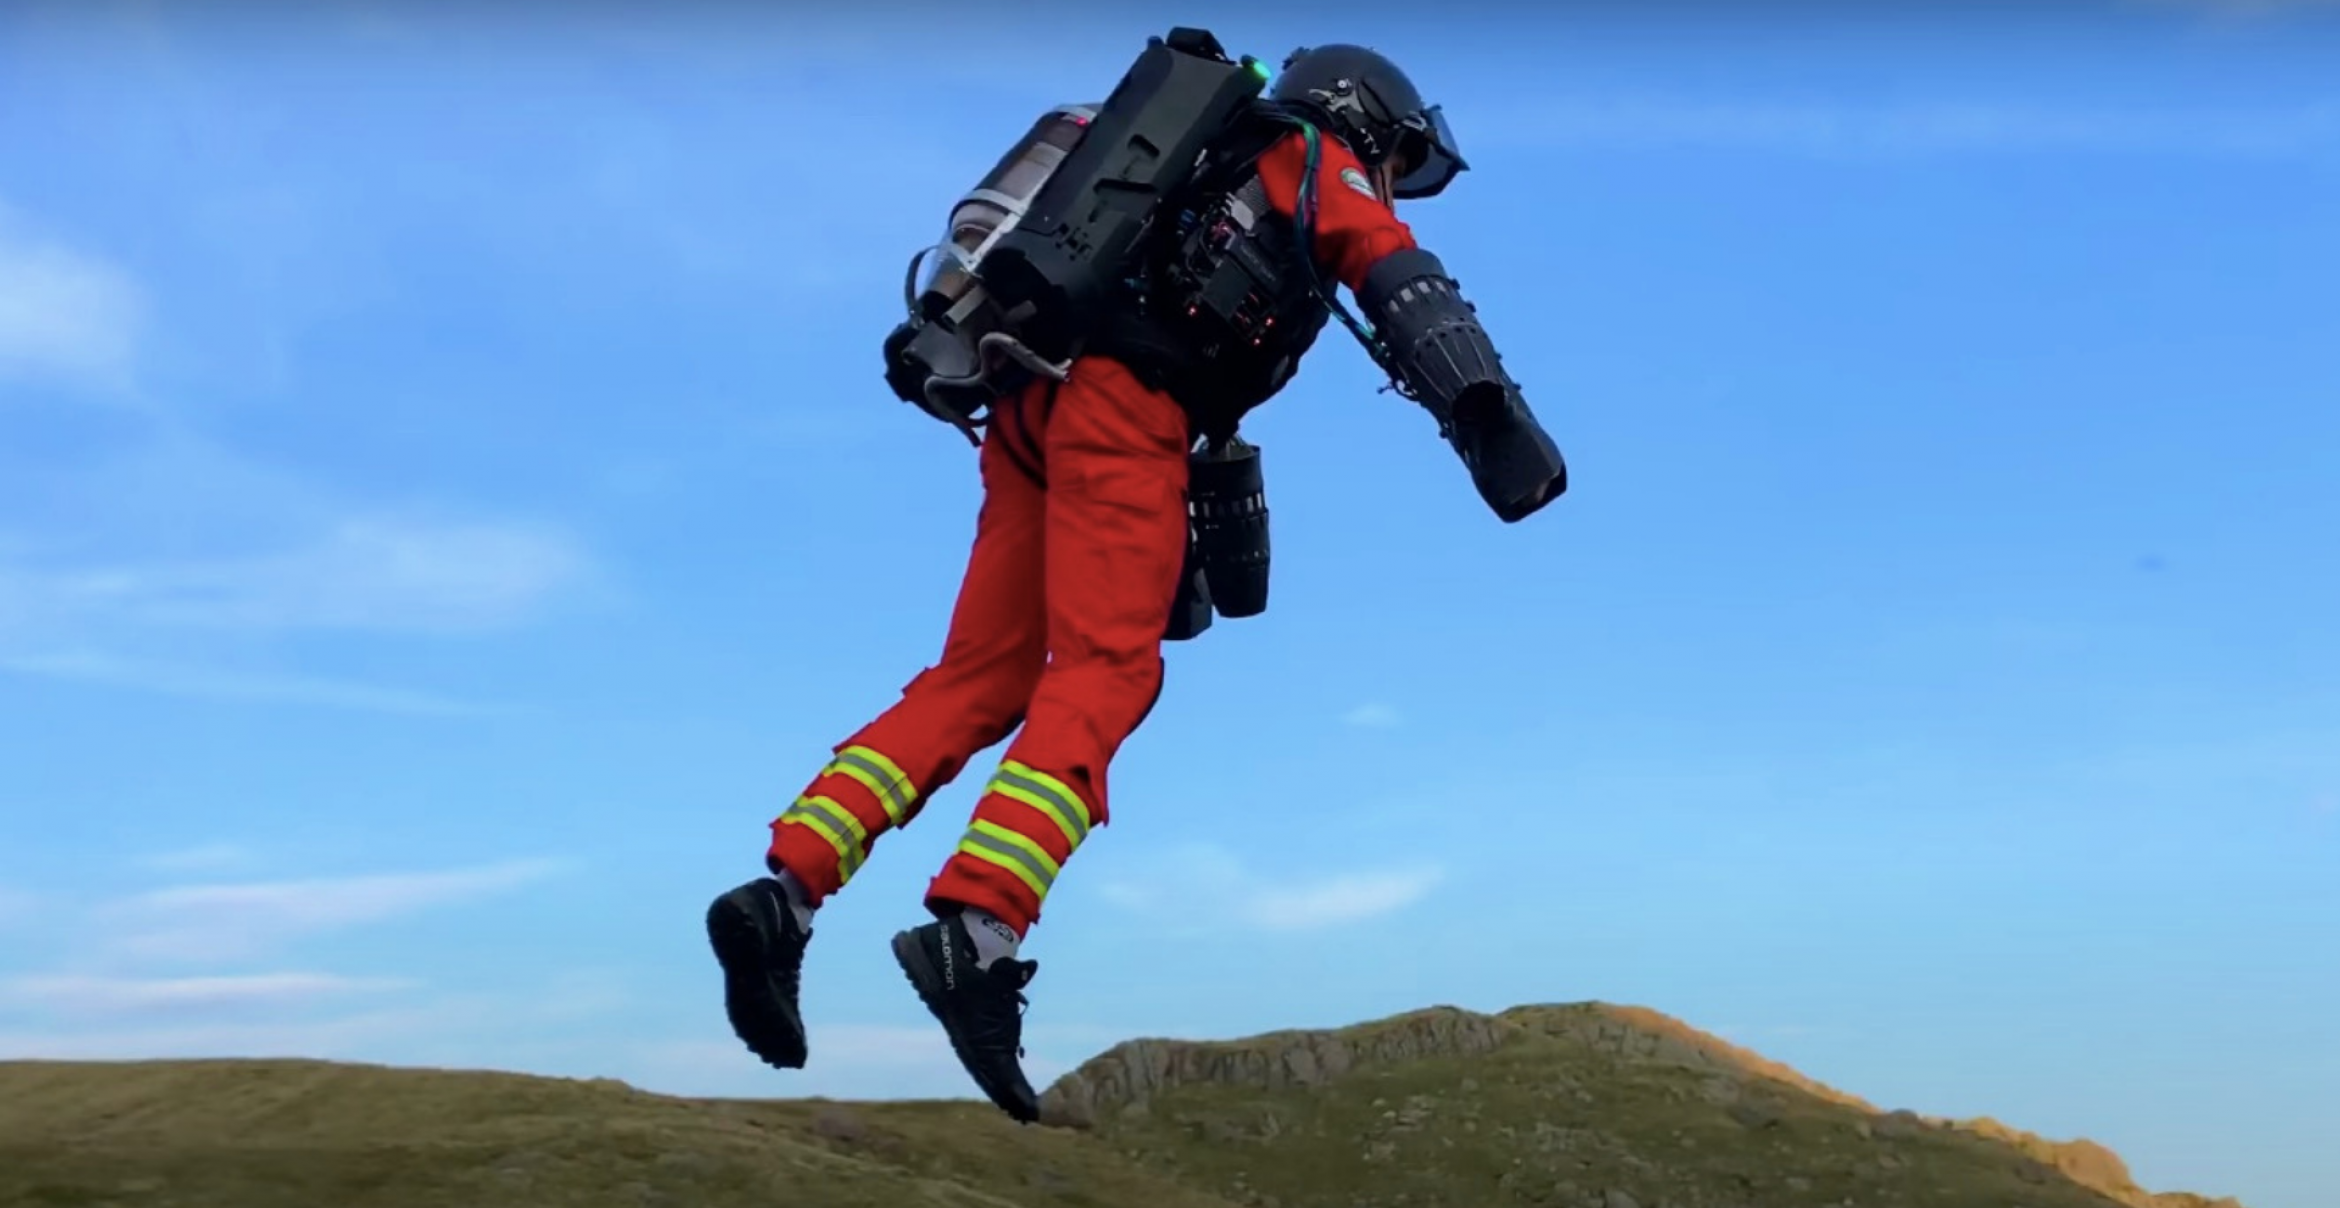 Fliegende Sanitäter*innen: Britische Bergrettung testet Jetsuit aus